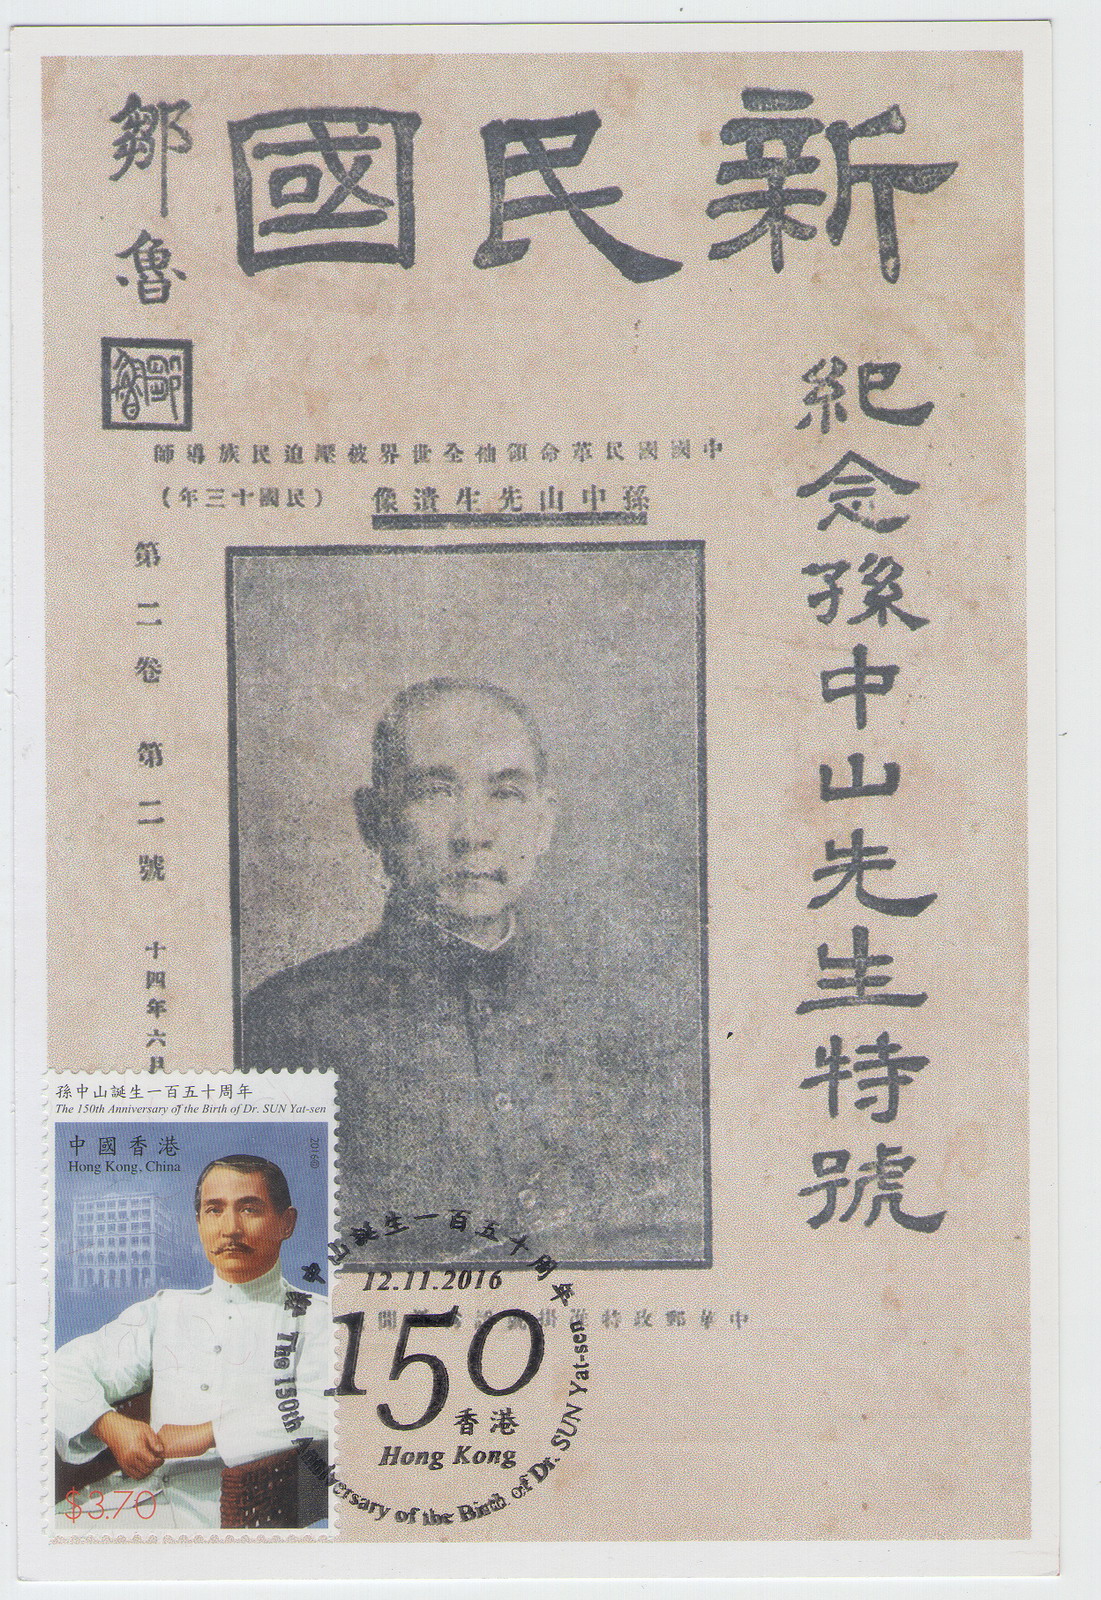 香港孙中山诞生150周年纪念-极限片-D3-A_resize.jpg